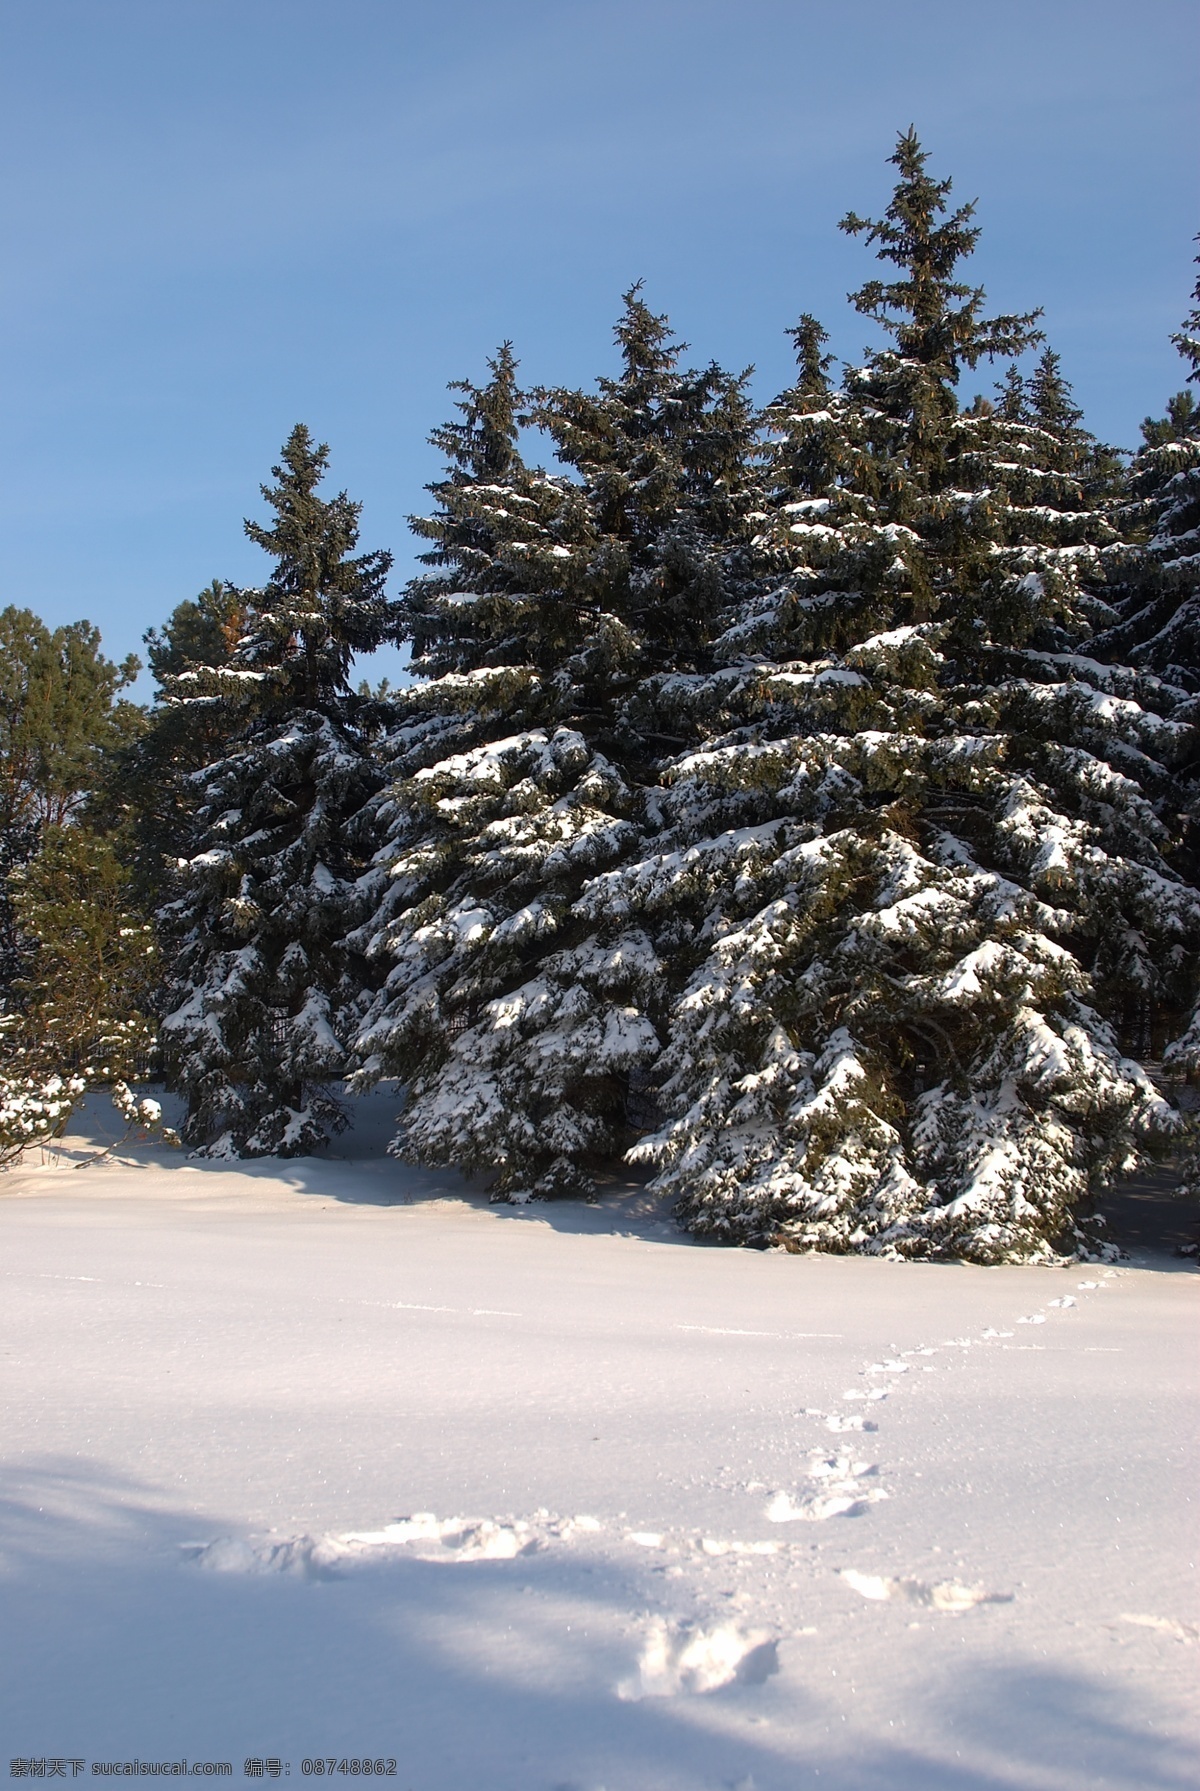 冬天雪景 冬季 美丽风景 美丽雪景 白雪 积雪 风景摄影 树木 树林 雪地 自然风景 自然景观 黑色